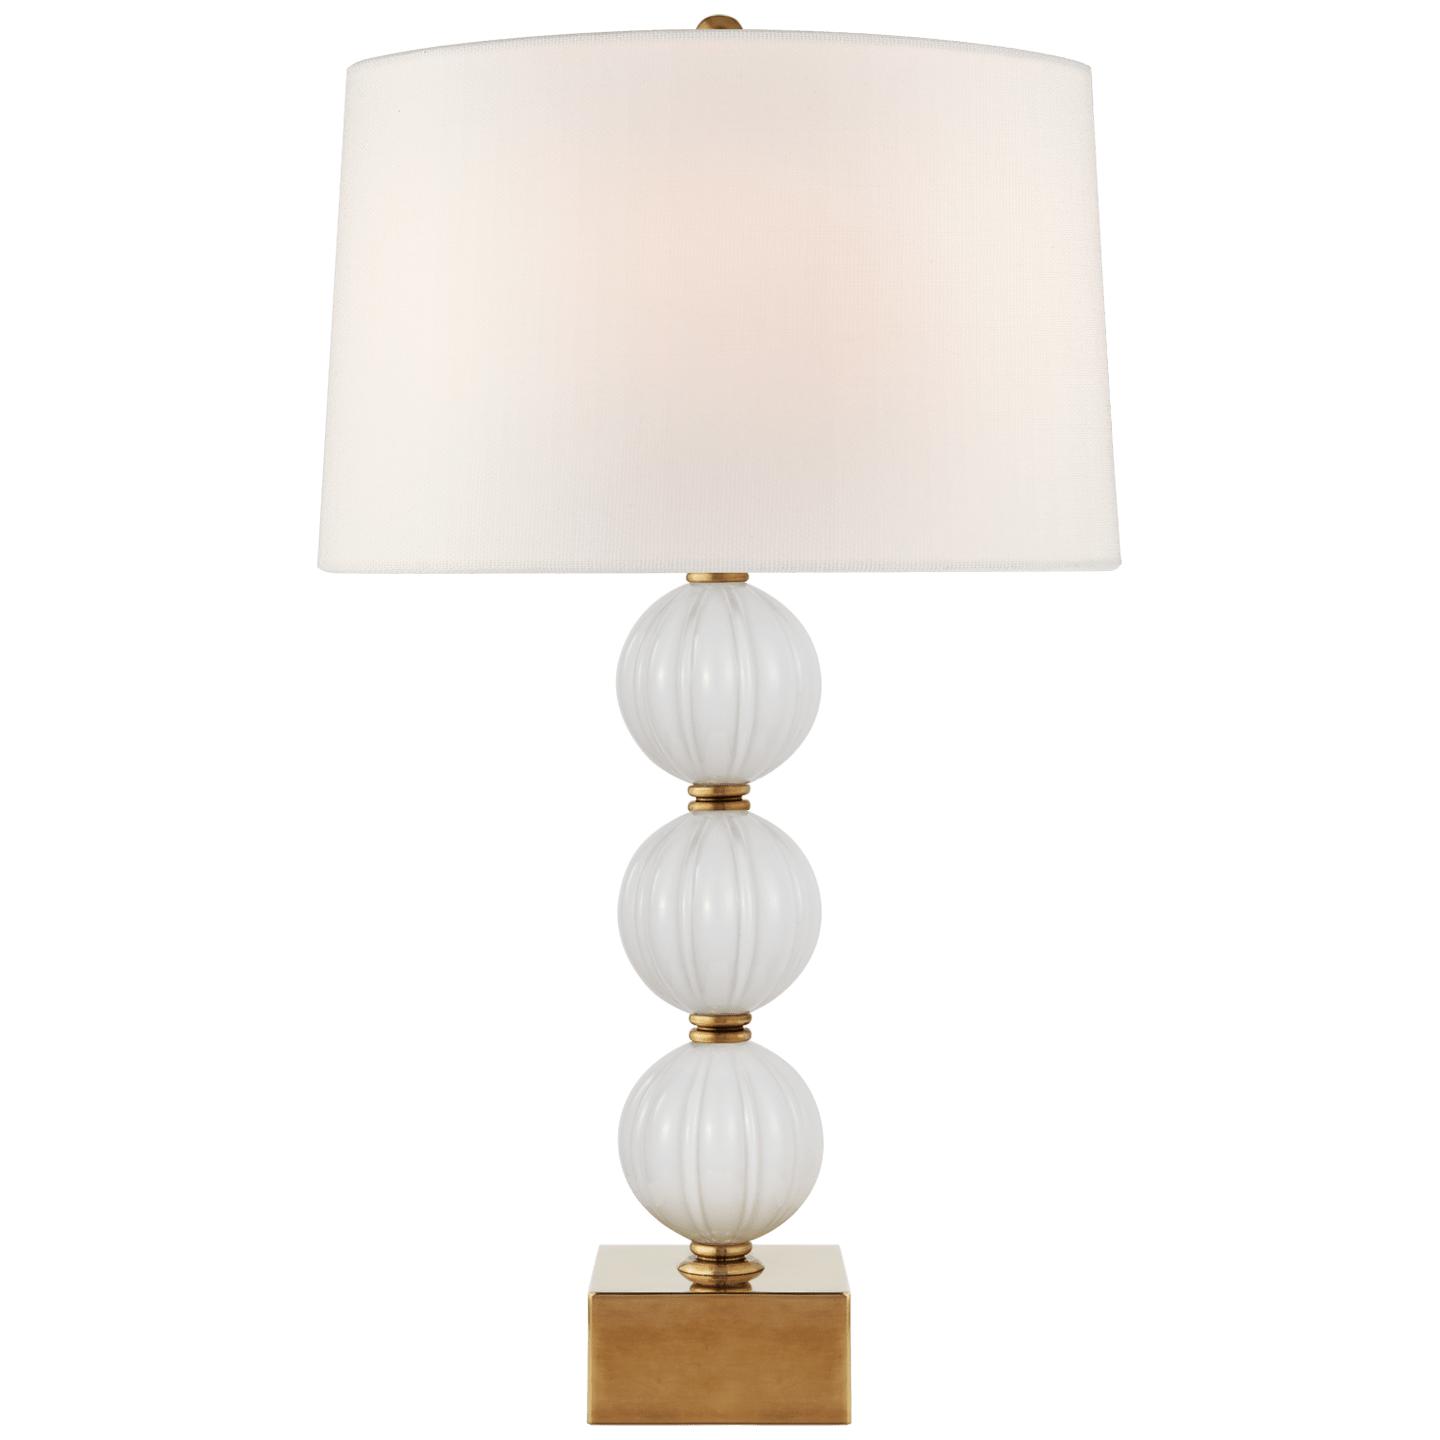 Купить Настольная лампа Sazerac Large Table Lamp в интернет-магазине roooms.ru